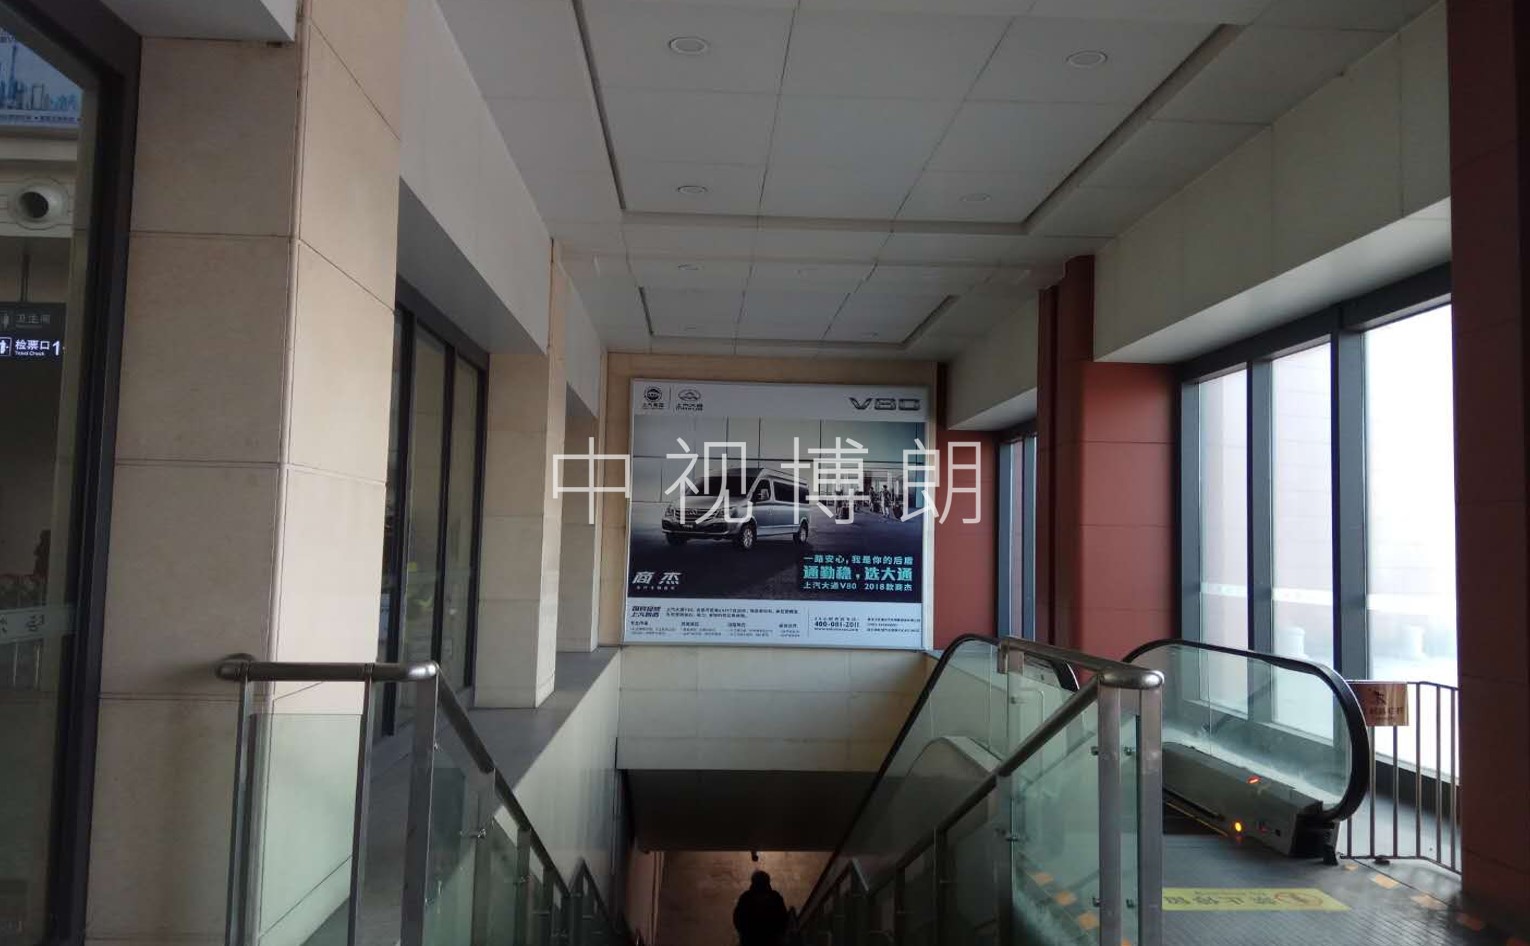 哈尔滨西站广告-东站房扶梯上方看板